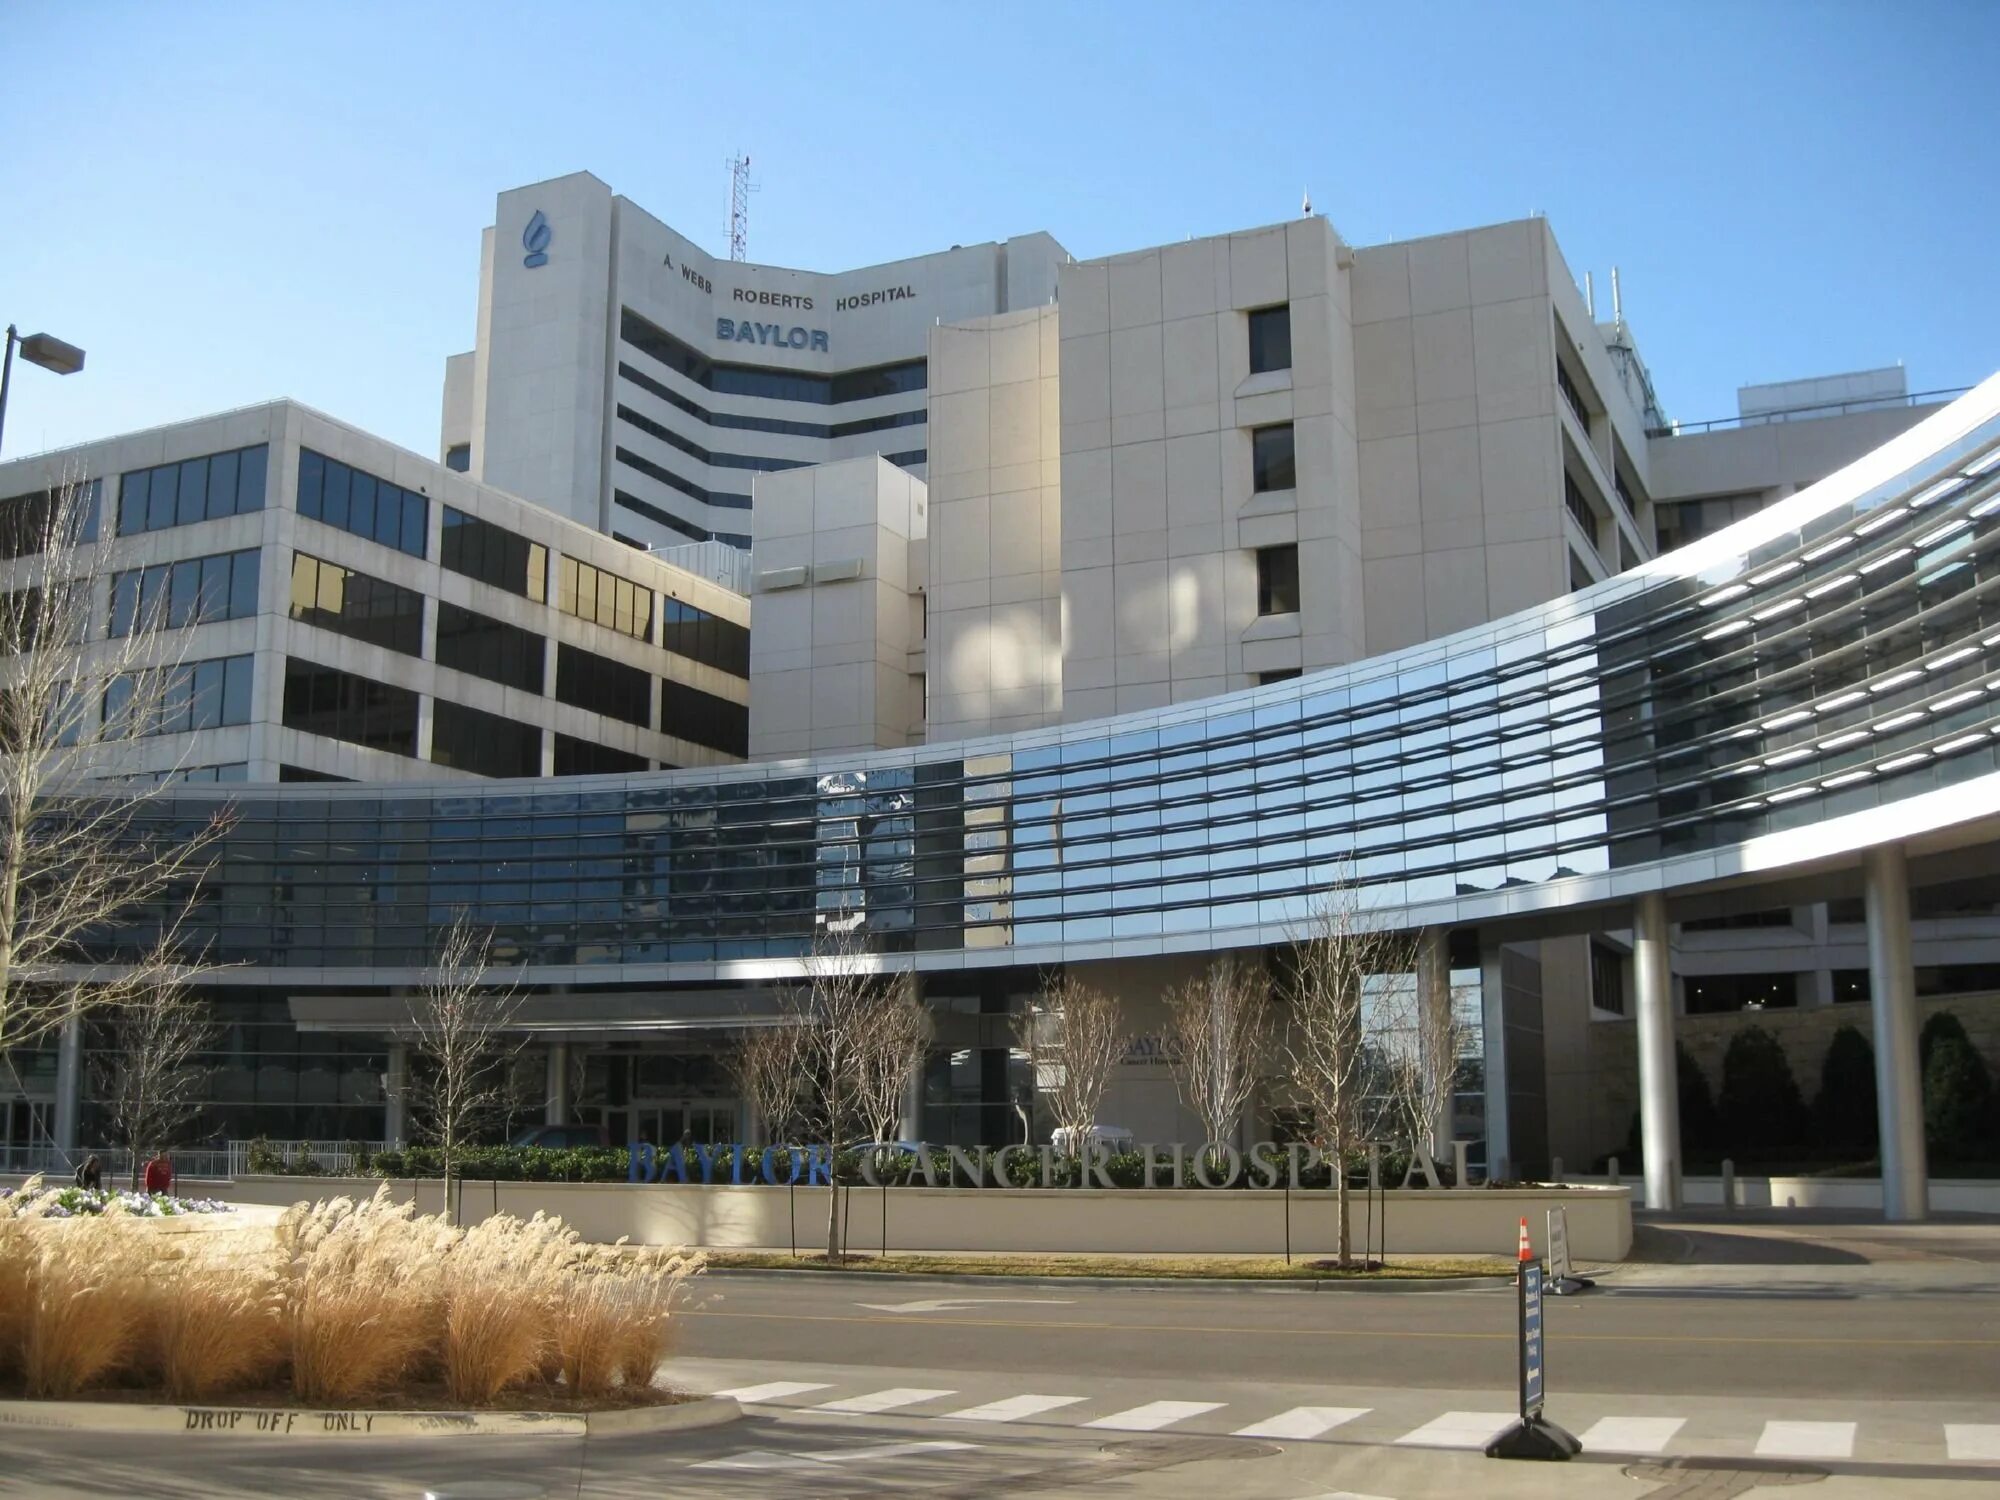 Америка госпиталь. США госпитали снаружи. Техасский университет в Далласе медицинский. Клиника США. Современные больницы США.